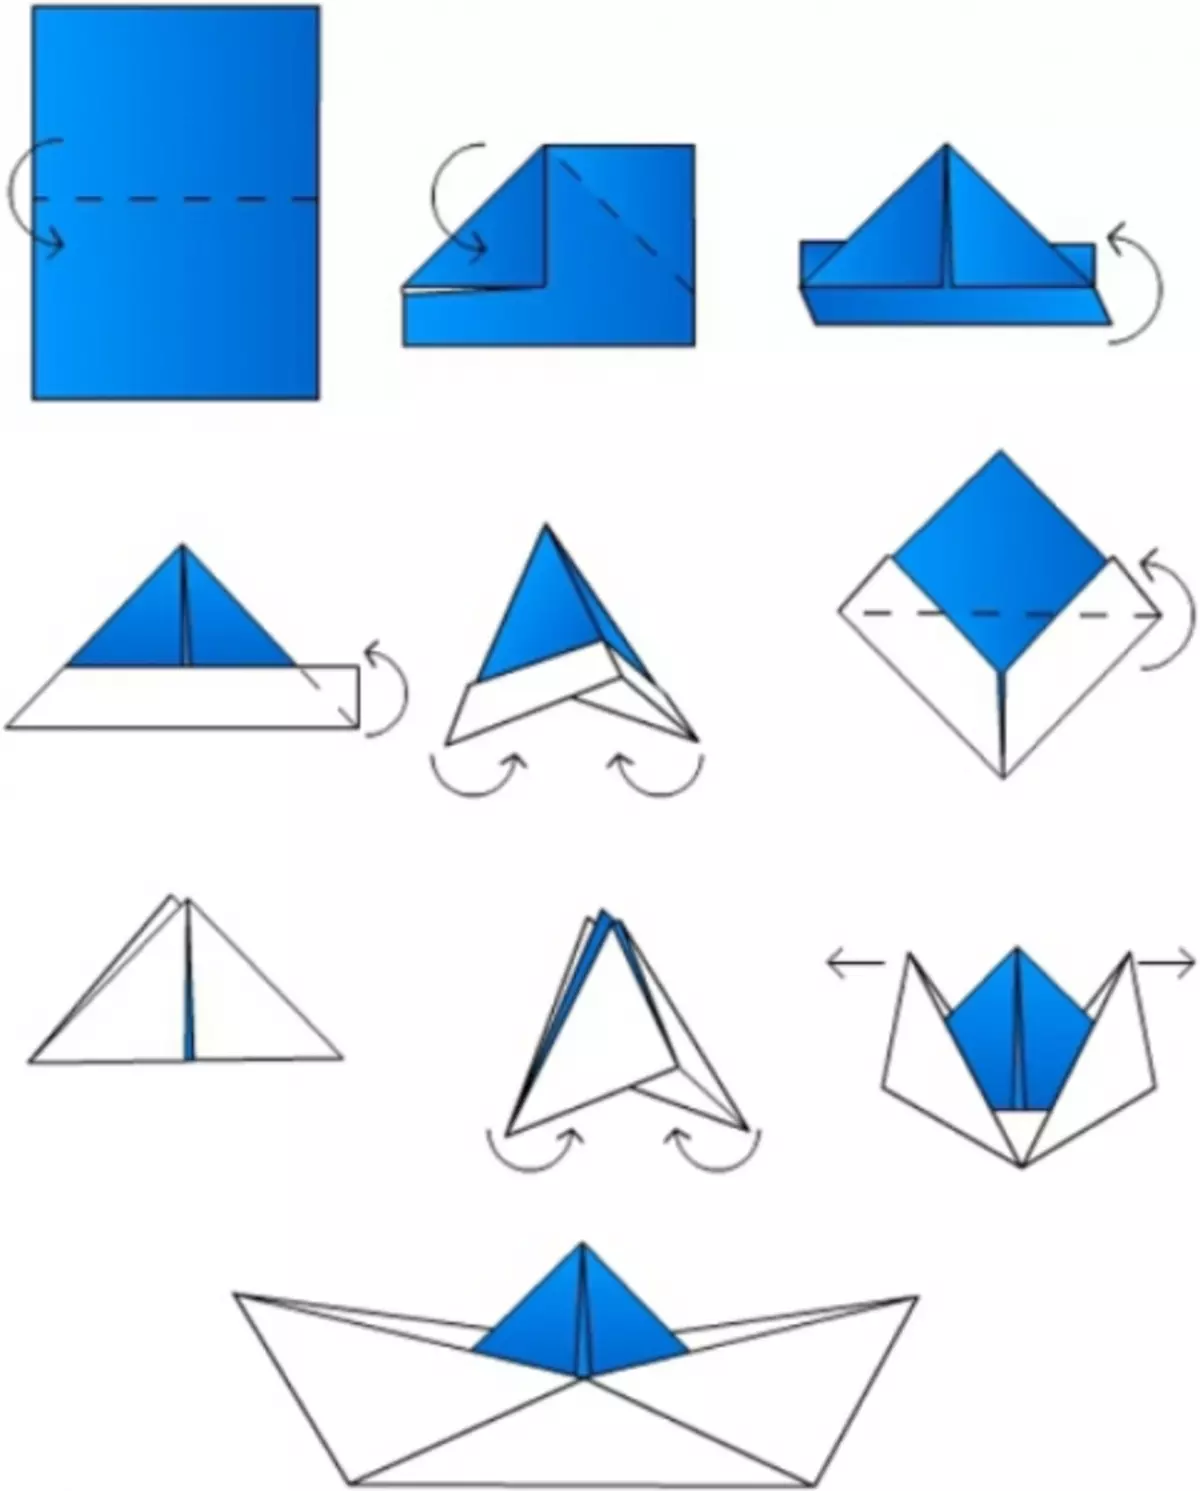 Qanday qilib origami qog'ozni qanday qilish kerak: qayiq, samolyot va videofilm